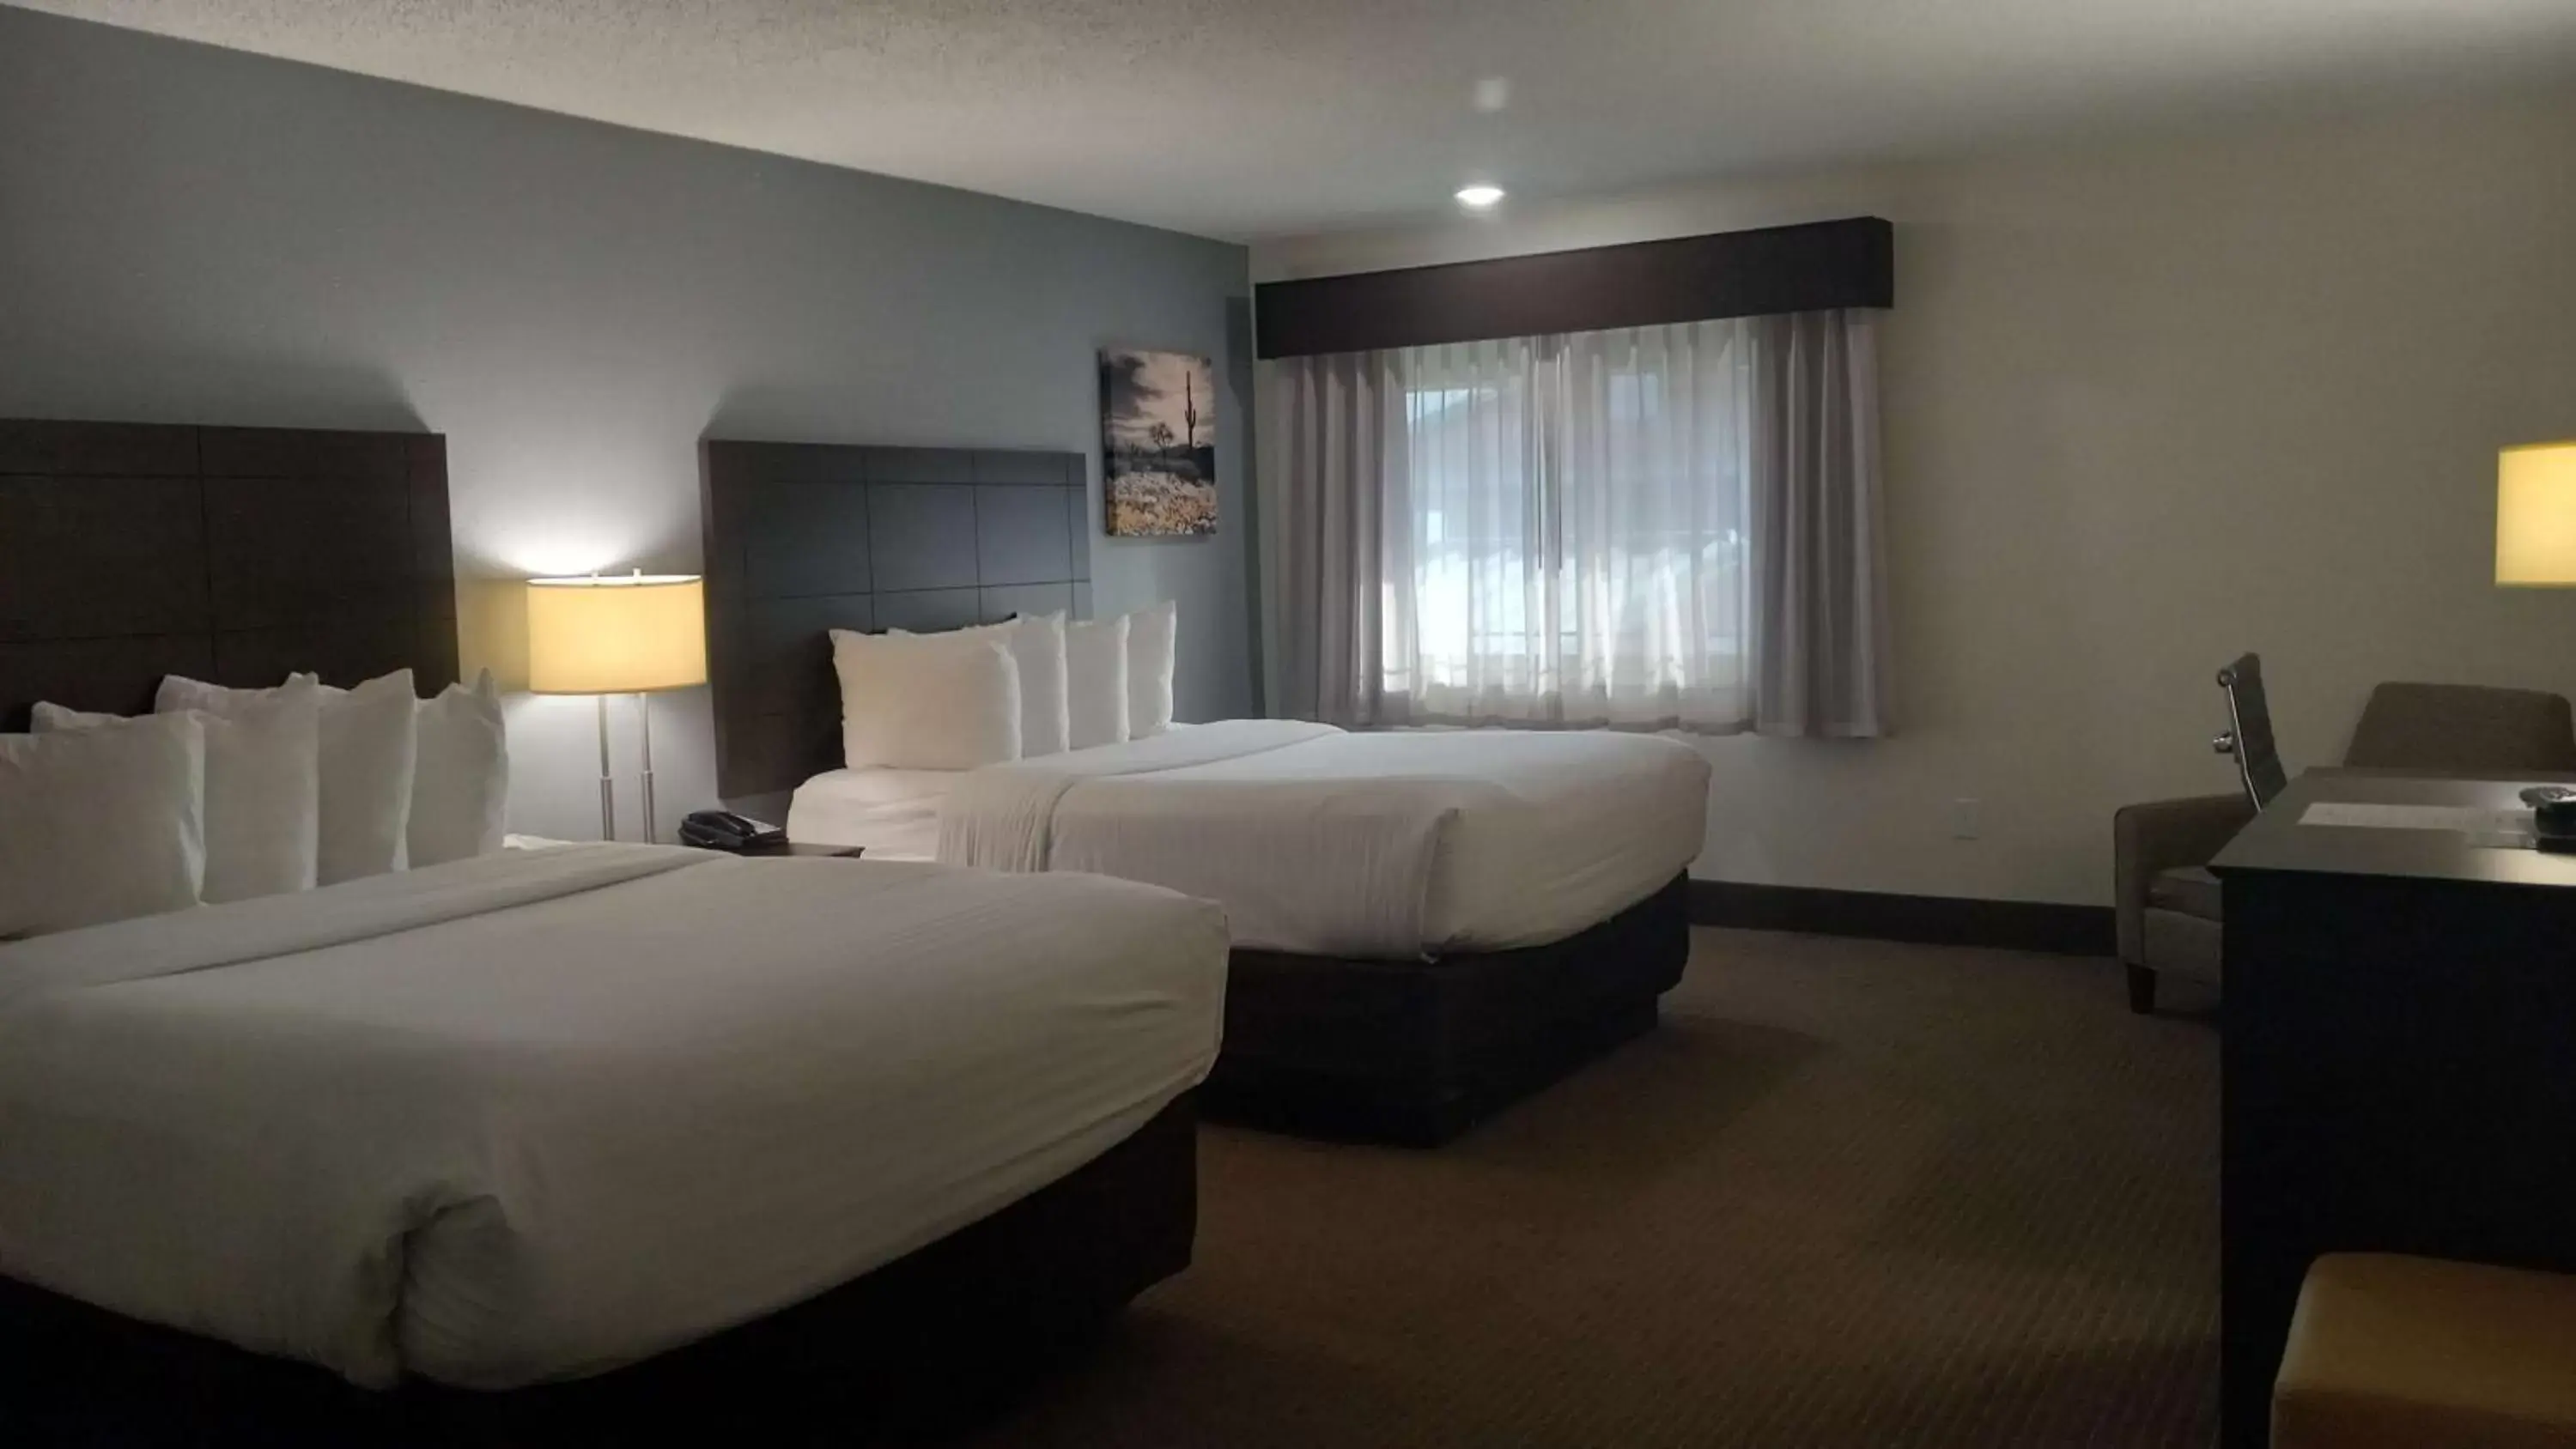 Bedroom, Bed in Best Western Downtown Casper Hotel